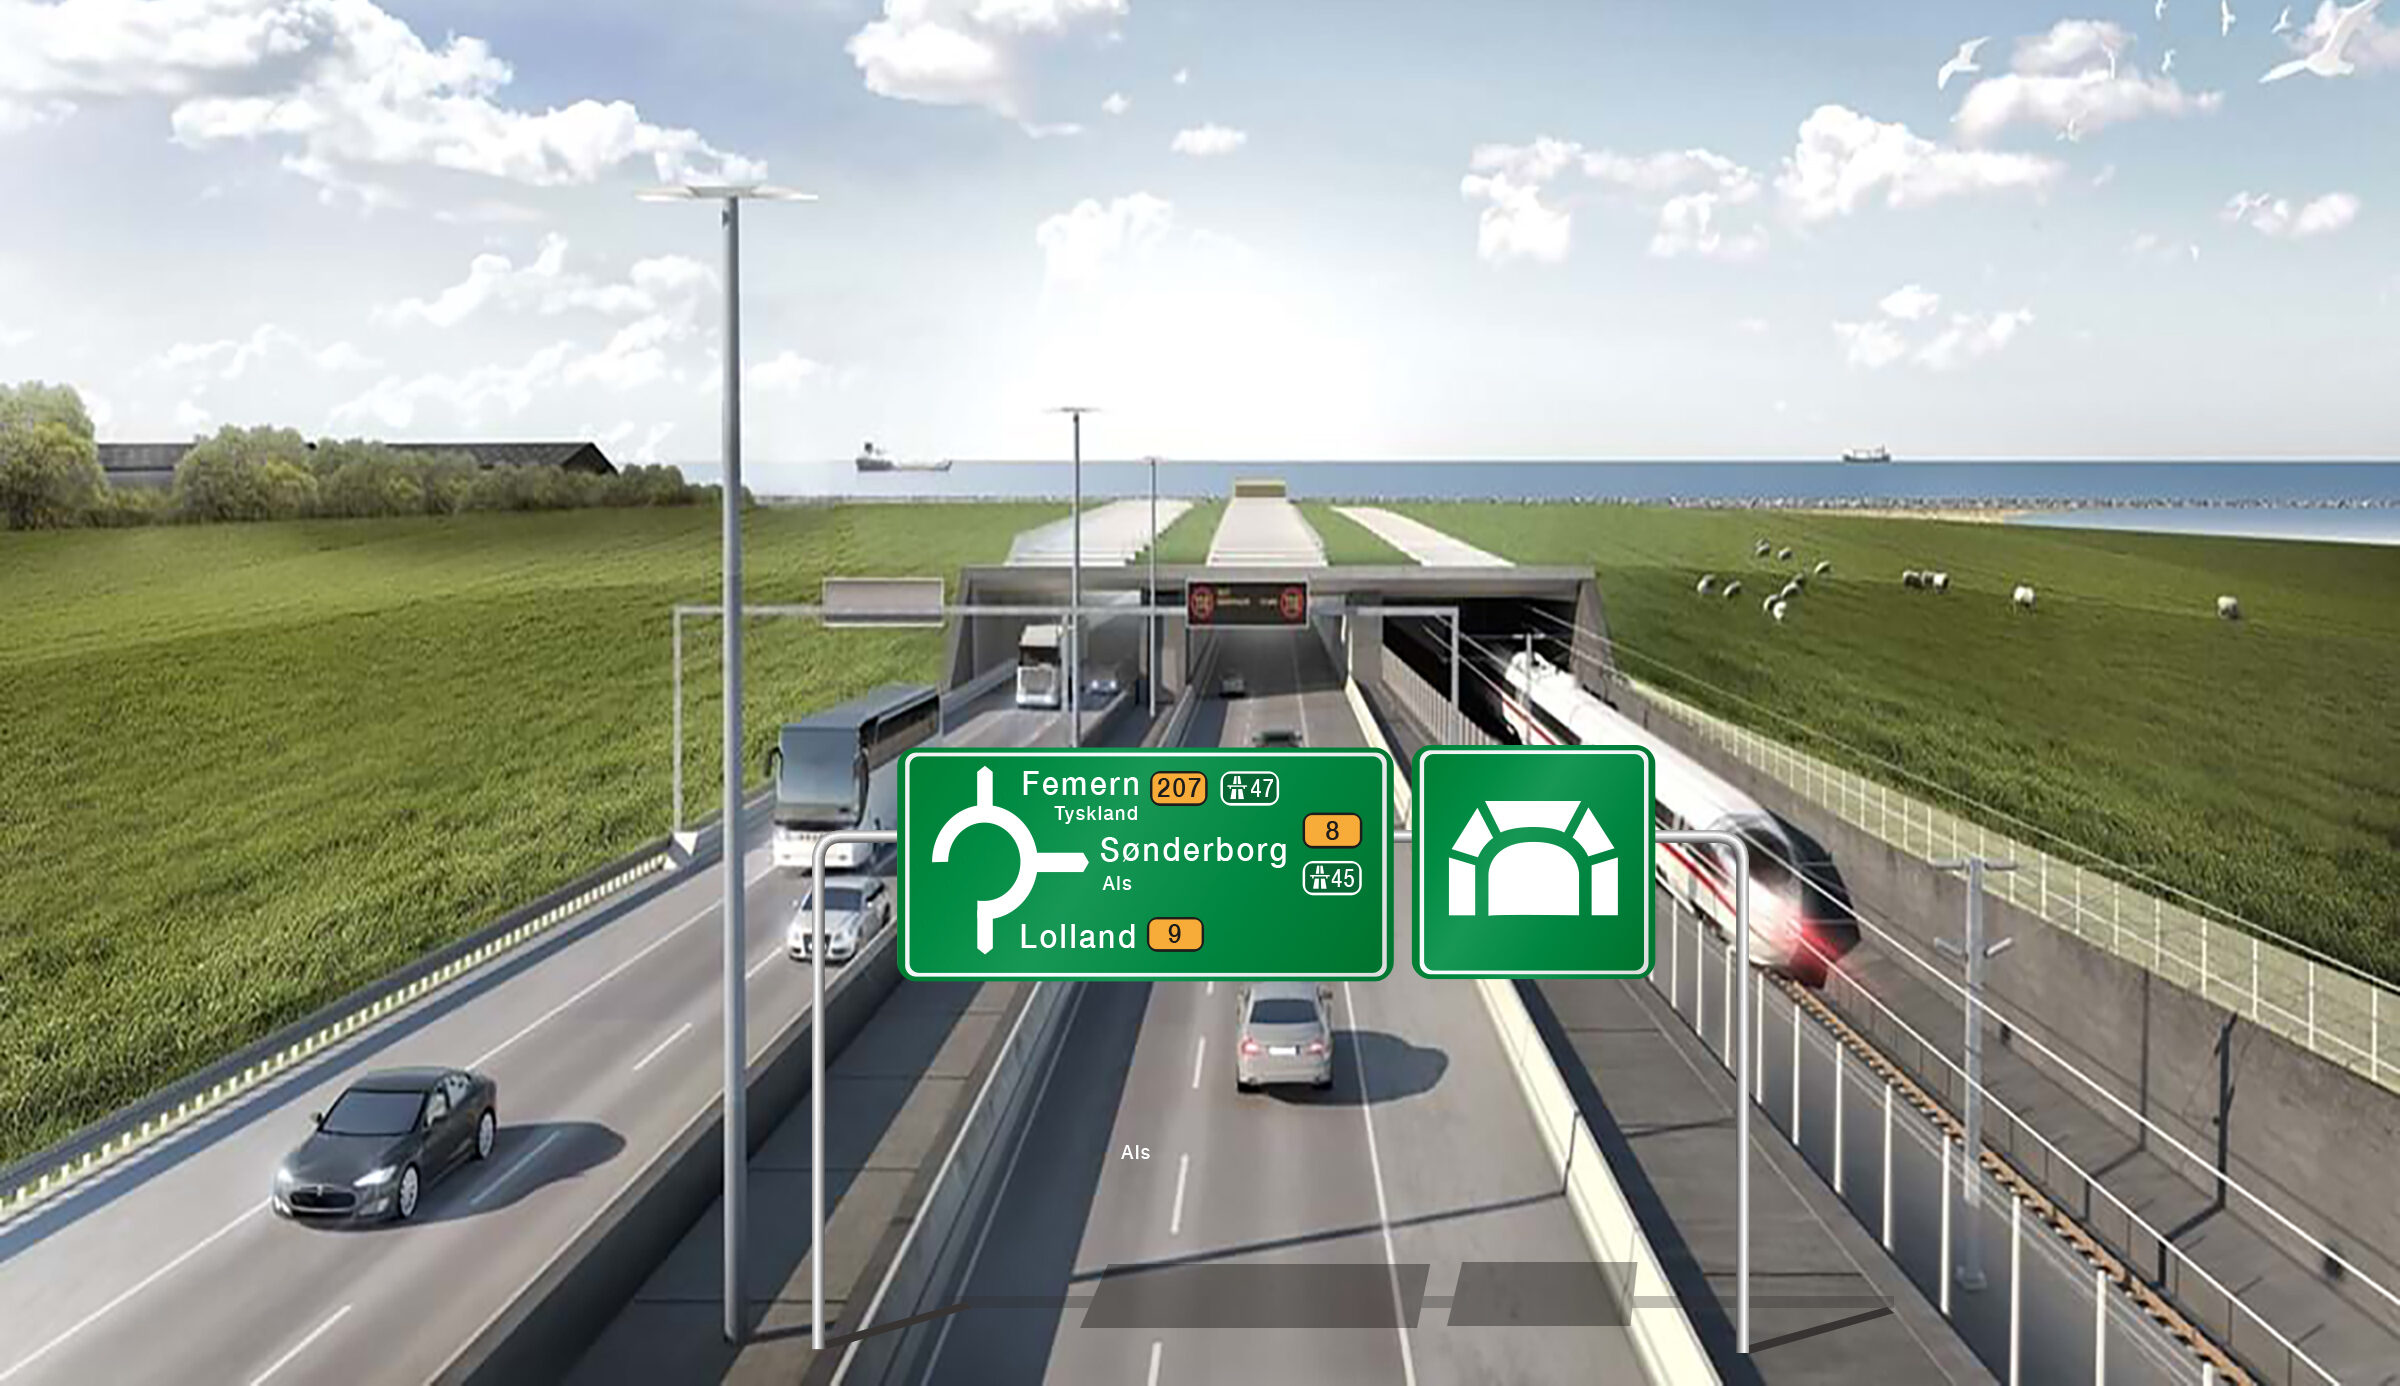 ”Tag første afkørsel i rundkørslen”. Sådan vil det fra 2035 lyde på din GPS, hvis du skal fra Lolland til Als via den netop offentliggjort forgrening af Femern Bælt-tunnelen.